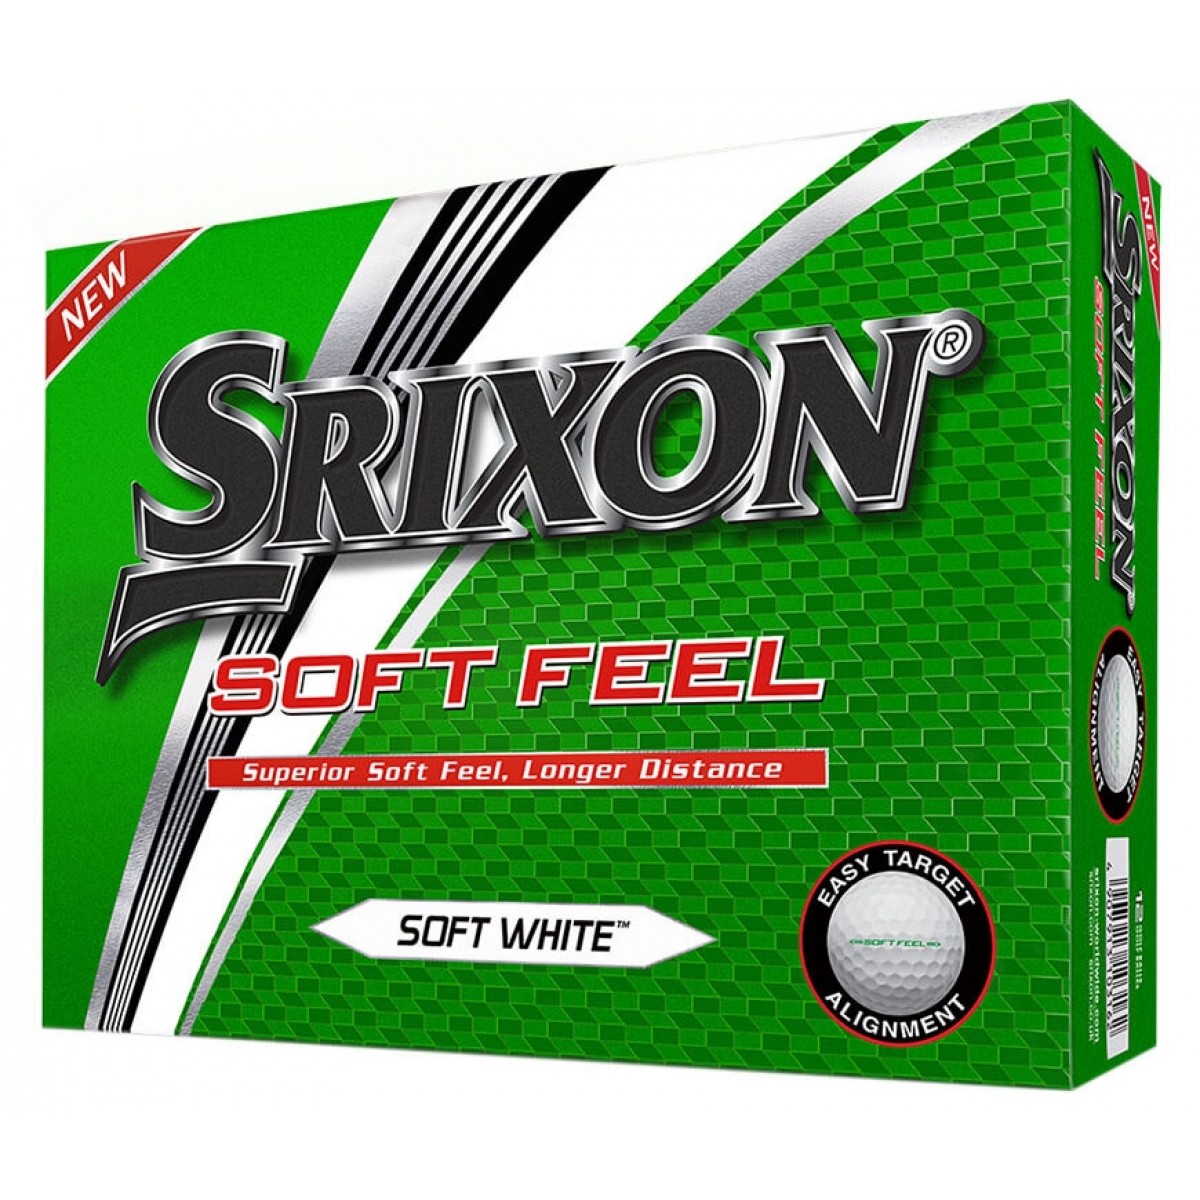 Srixon Soft Feel Balls